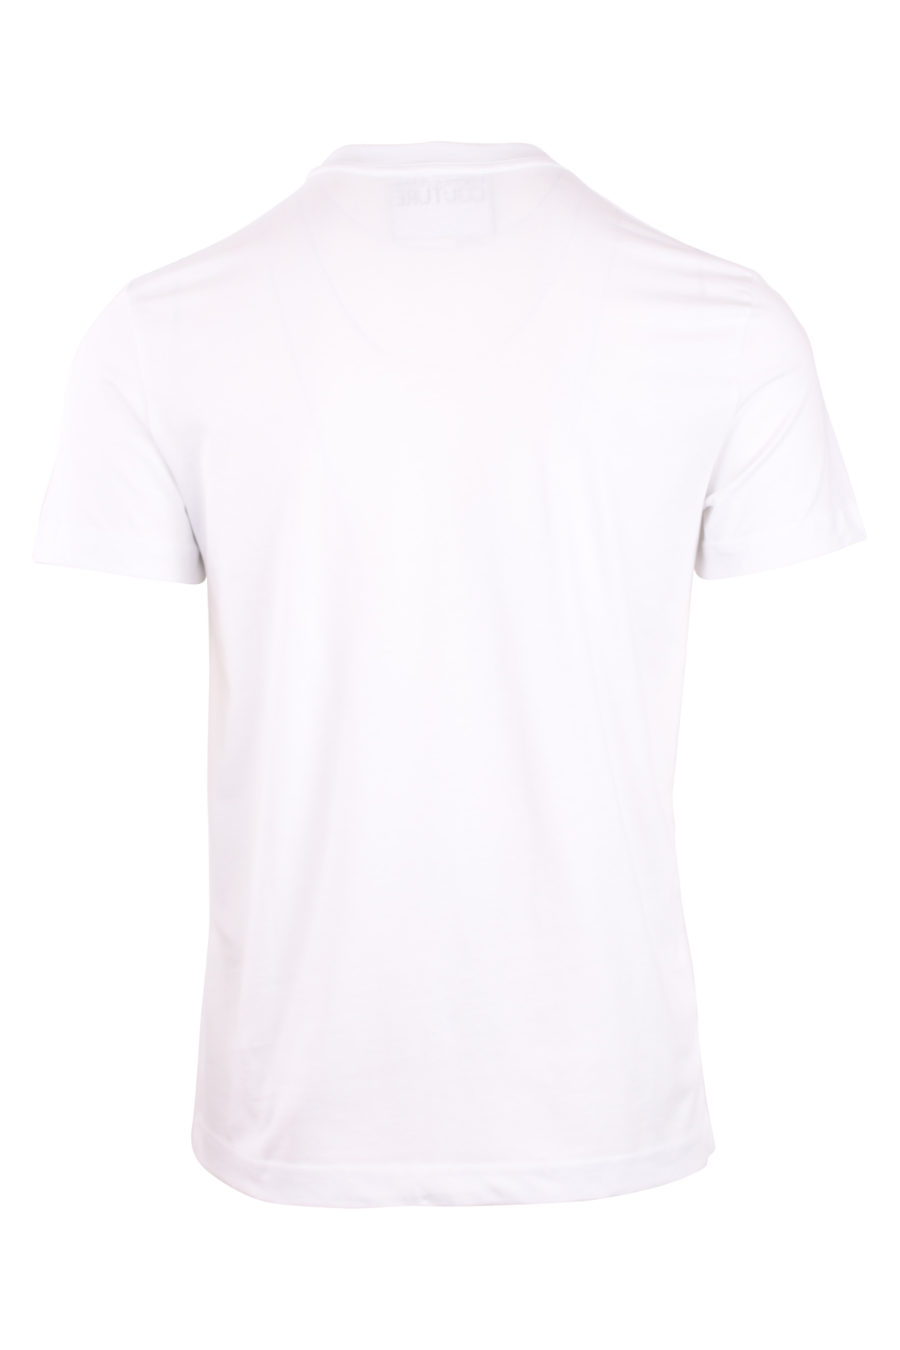 Camiseta blanca con logo en triangulo pequeño - IMG 0754